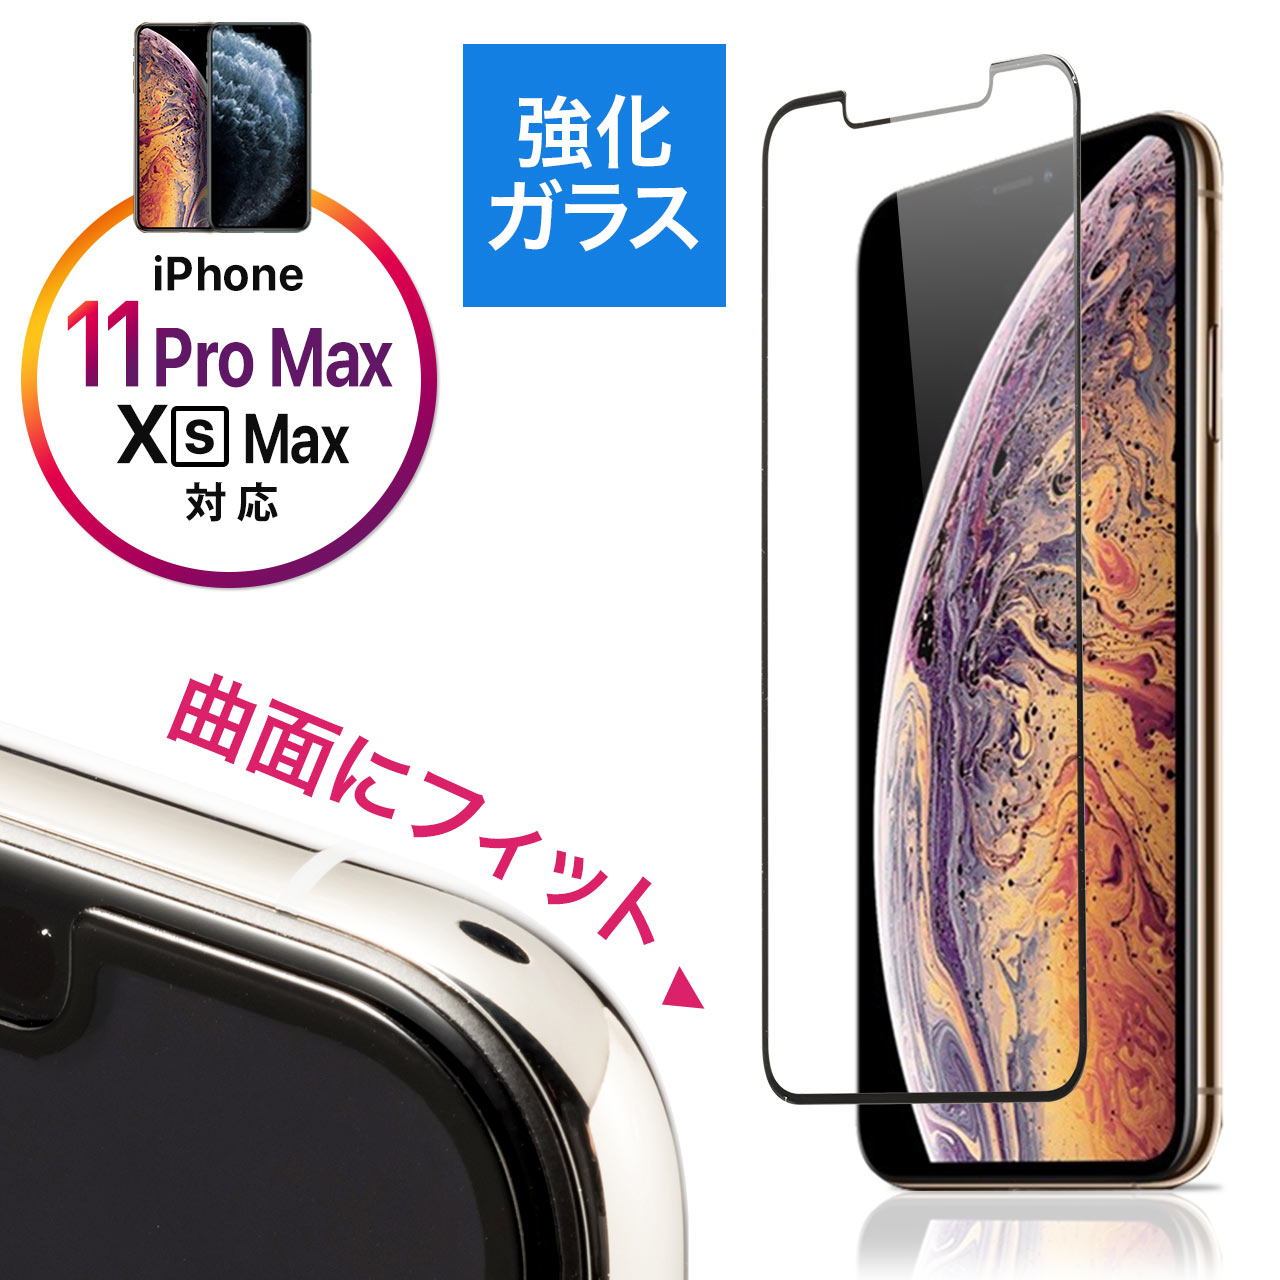 iPhone11 Pro Max/iPhoneXS Max画面保護強化ガラスフィルム(3D  Touch・インカメラ撮影対応・硬度9H・ラウンド形状・アタッチメント付き・ブラック） 200-LCD053BK